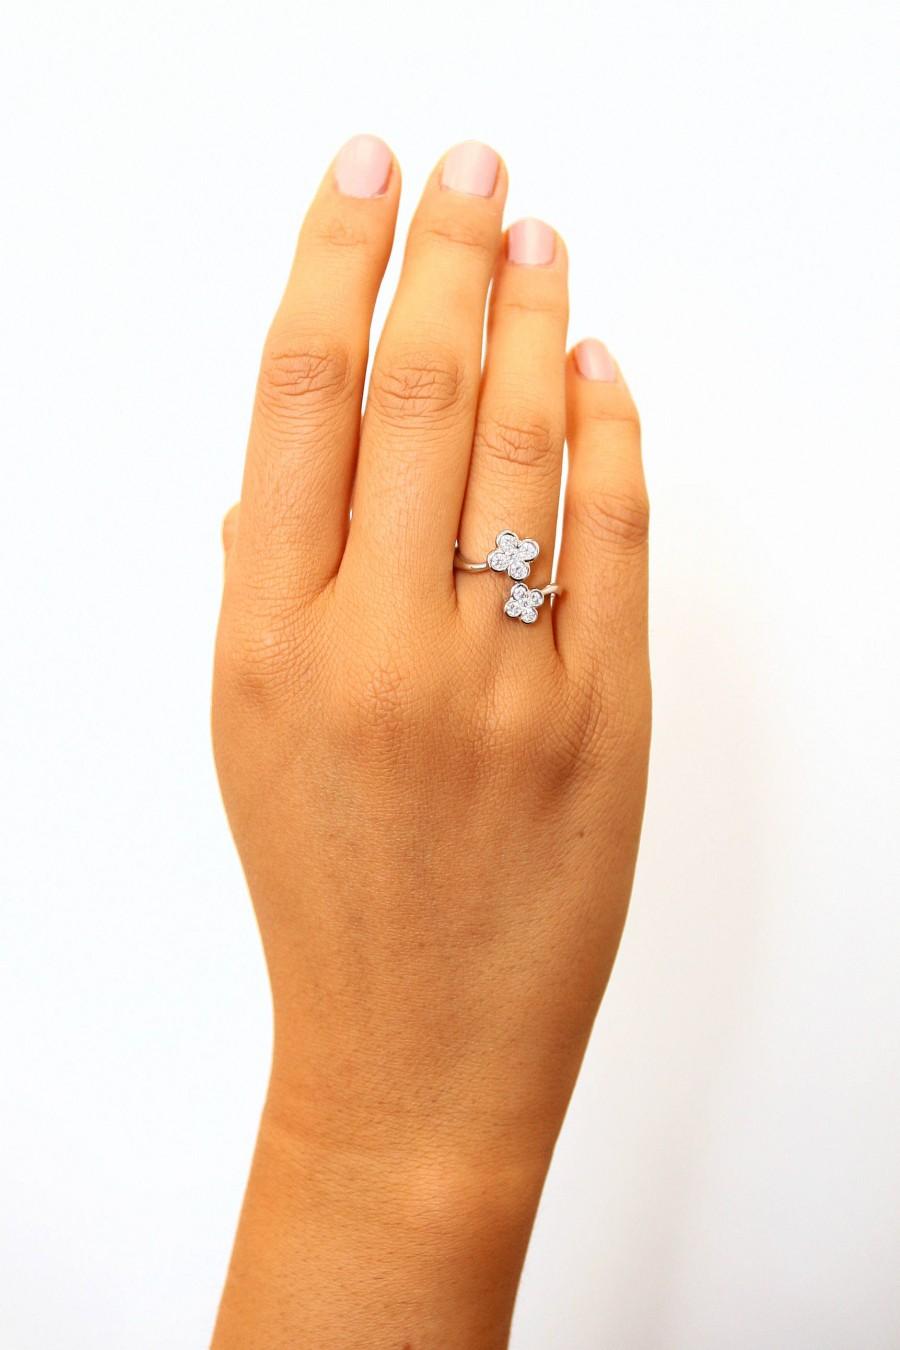 زفاف - Sakura Diamond Cherry blossom open ring for women  promise band for her anniversary birthday gift in white rose or yellow gold 0.54 carat